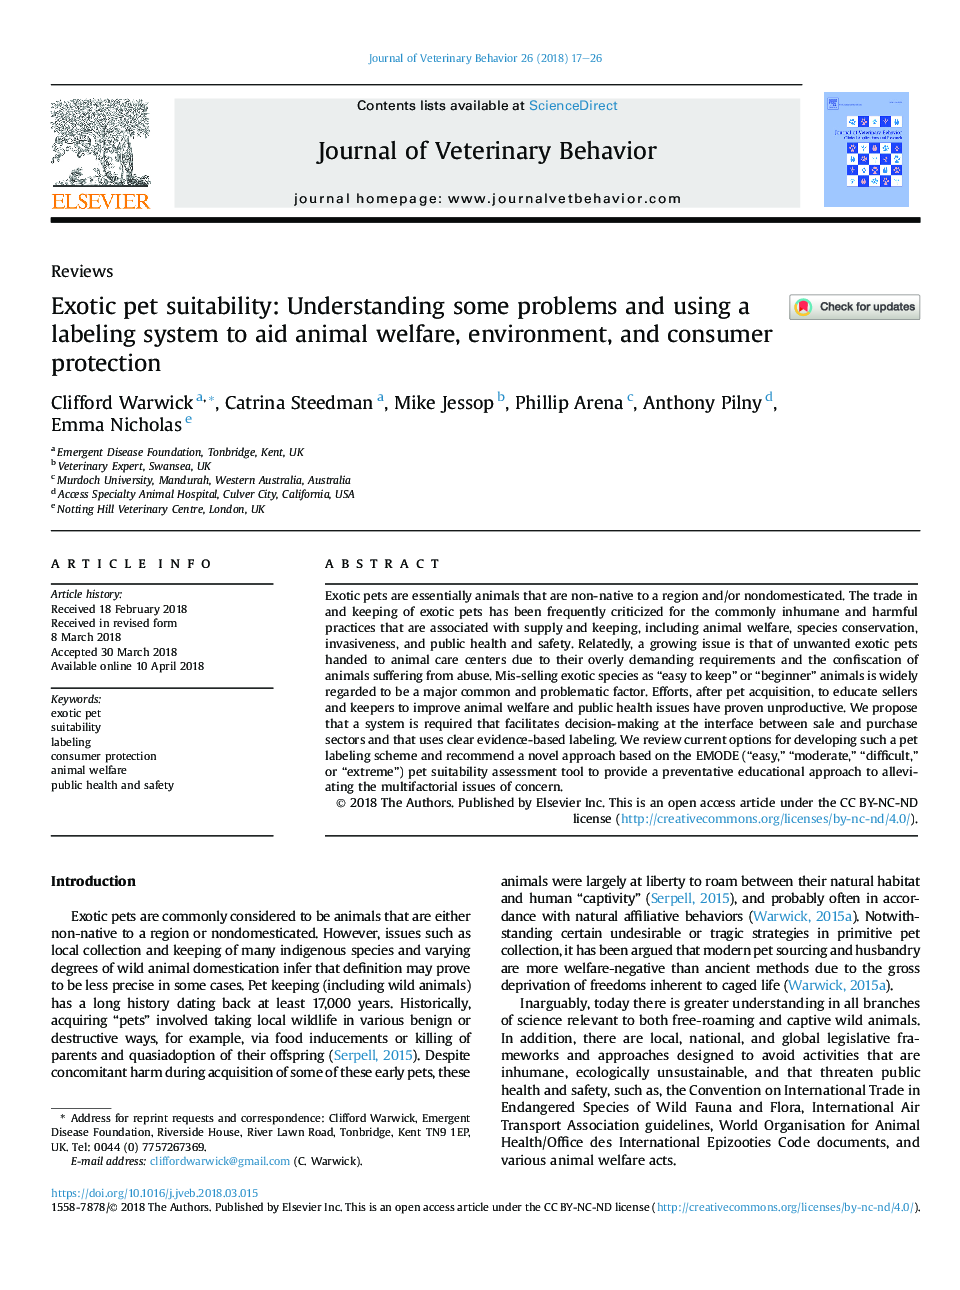 تناسب اندام حیوانات عجیب و غریب: درک برخی از مشکلات و استفاده از یک سیستم برچسب زدن برای کمک به رفاه حیوانات، محیط زیست و حفاظت از مصرف کنندگان 